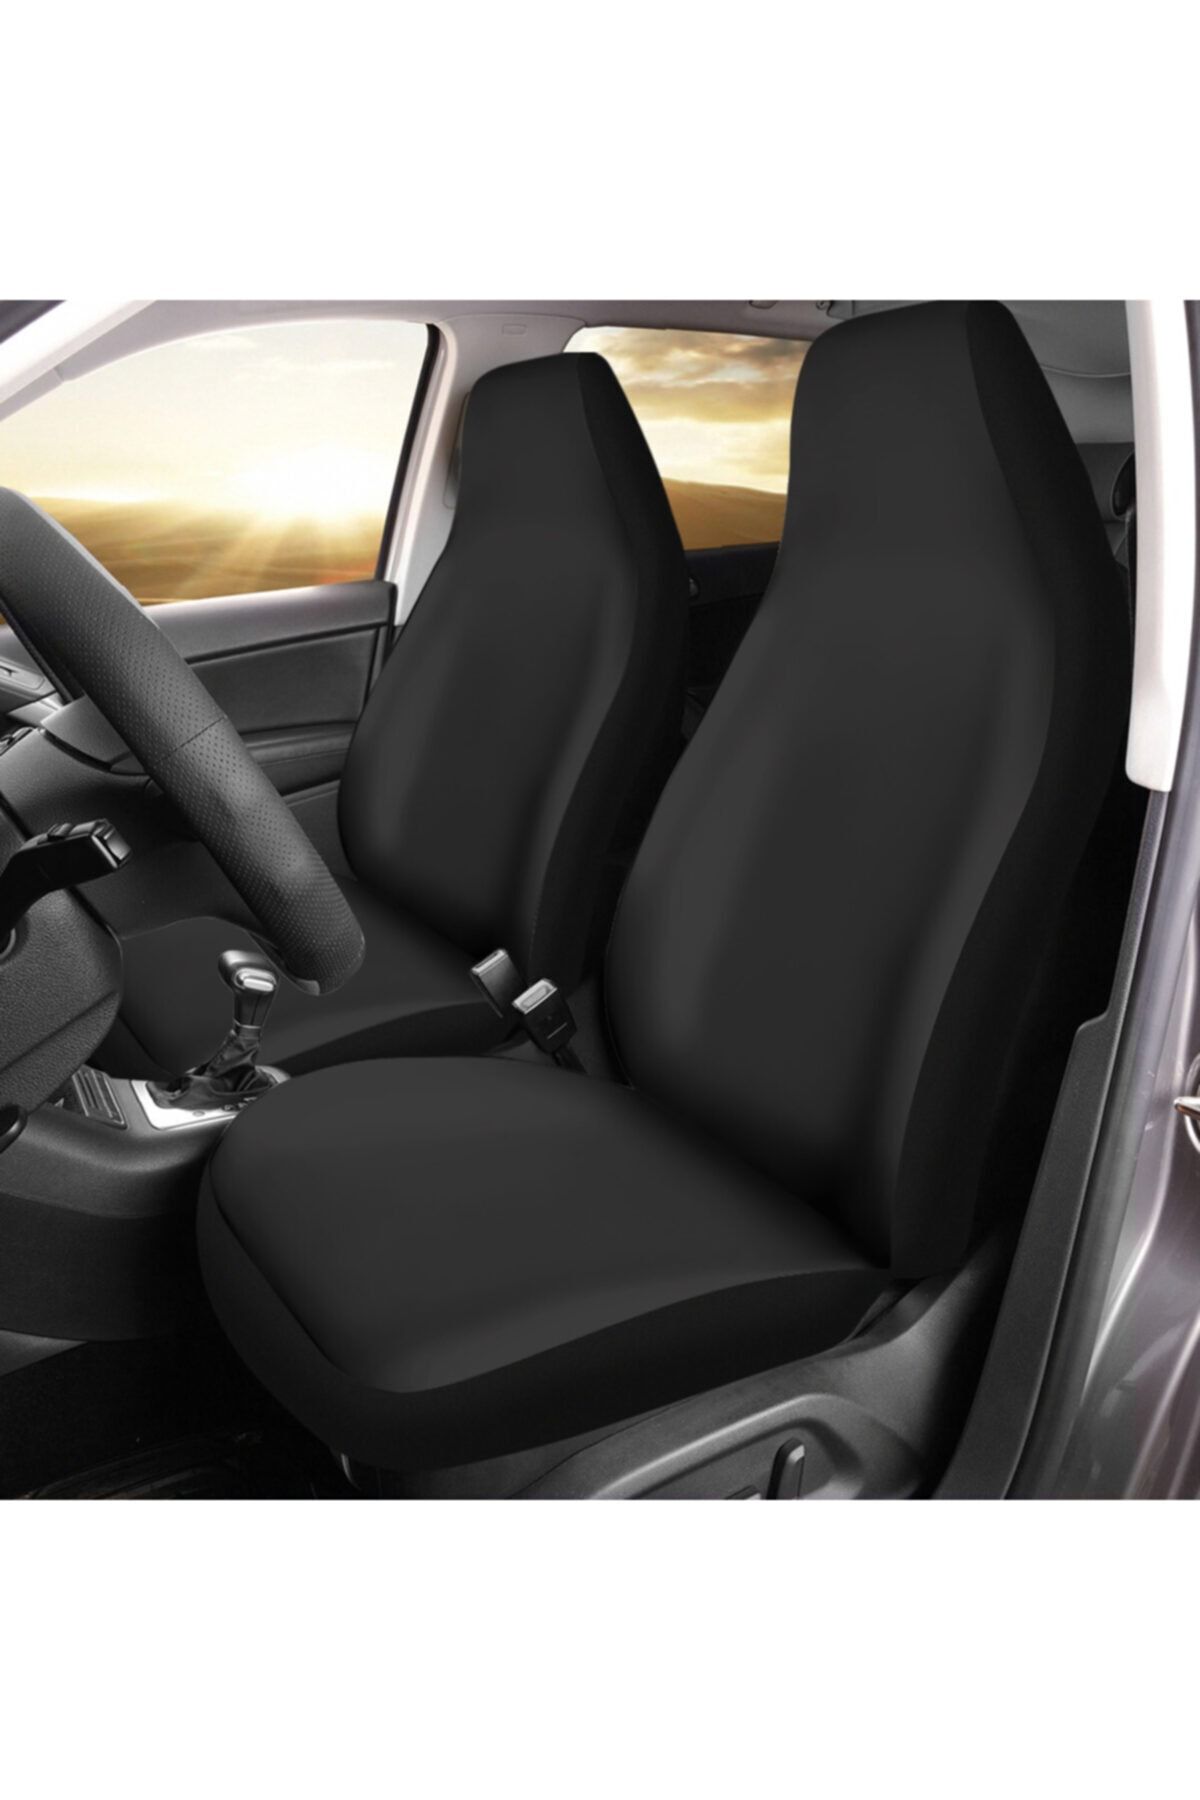 Antwax Toyota Corolla Araca Özel Oto Koltuk Kılıfı Pro - Siyah ( Yeni Tasarım - Yeni Fit Kalıp )